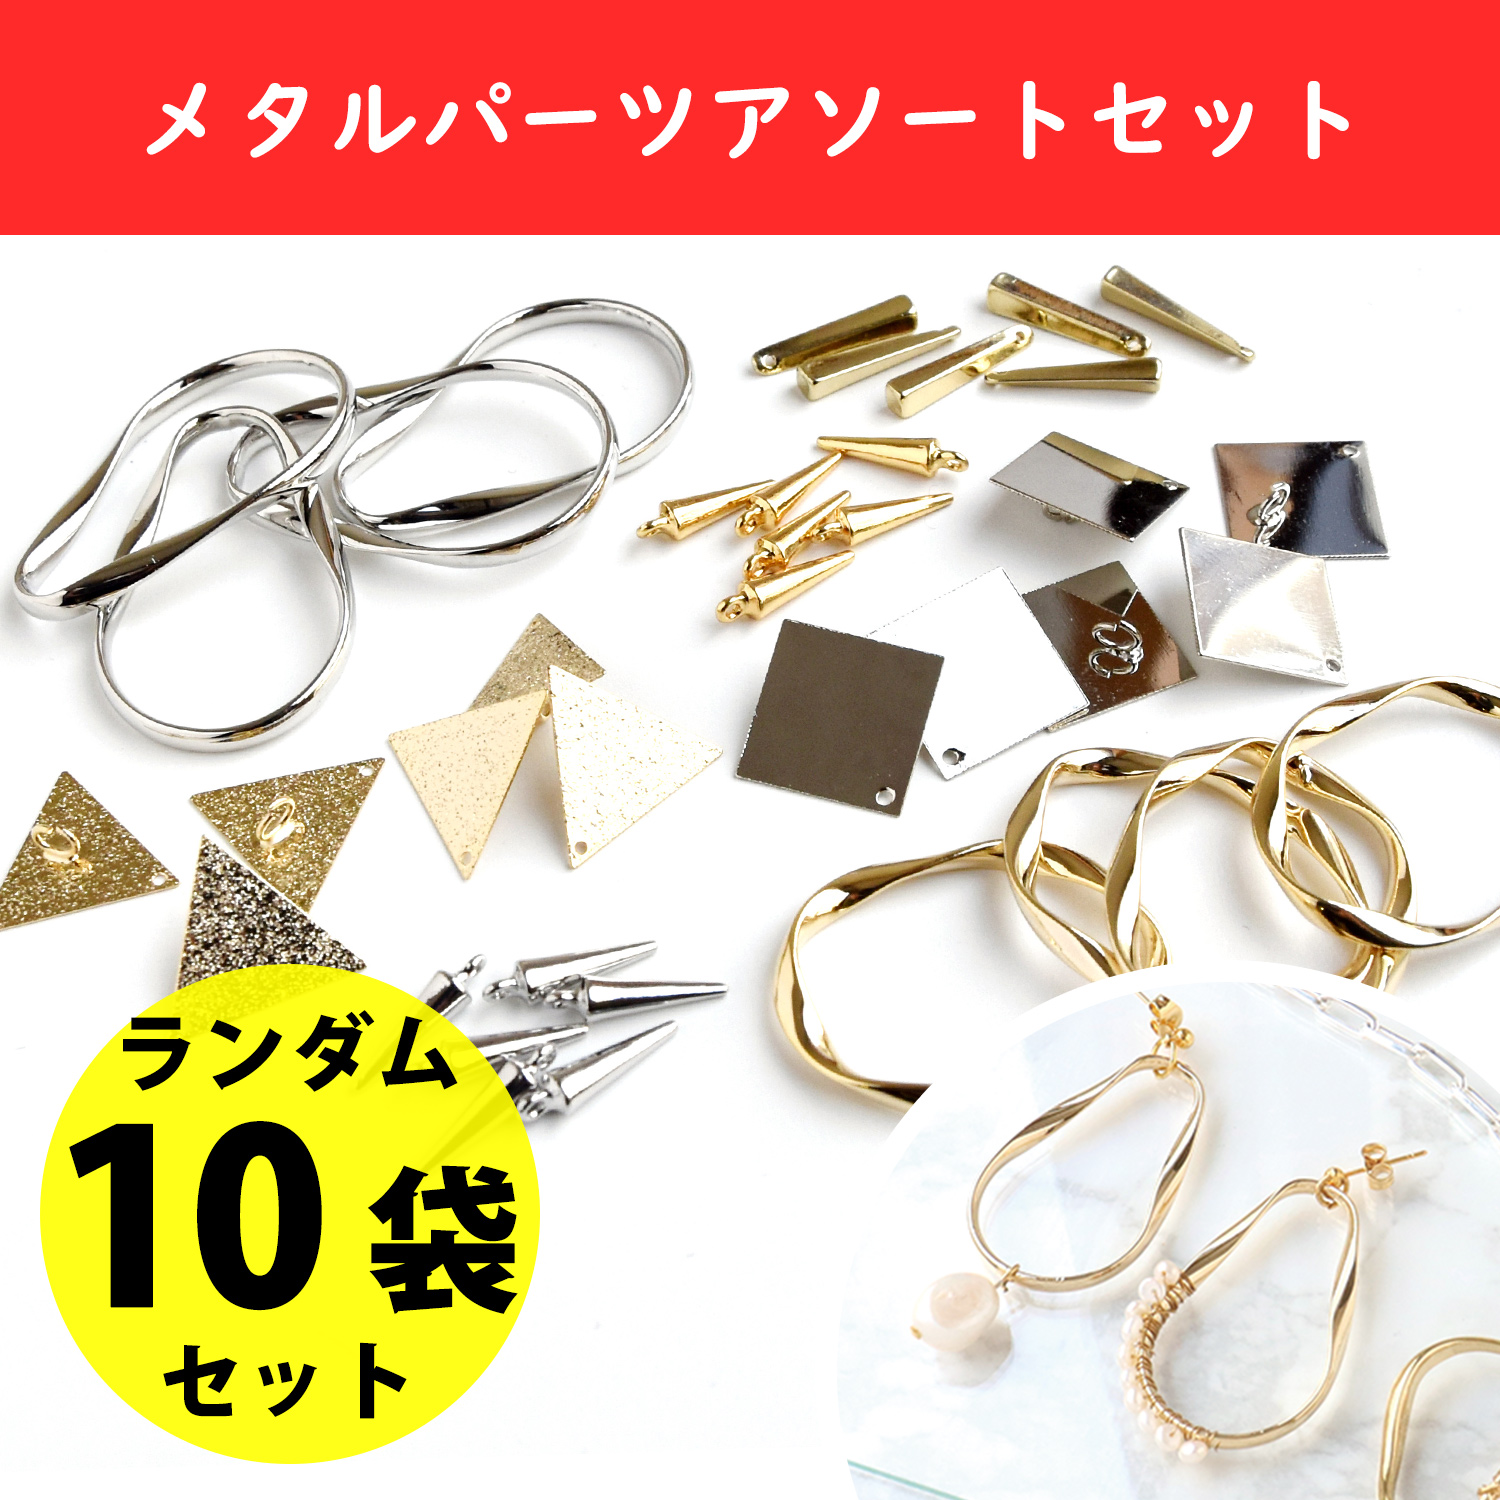 TOK-MTR Metal Parts Assorted Set Random 10 Bags (Set)